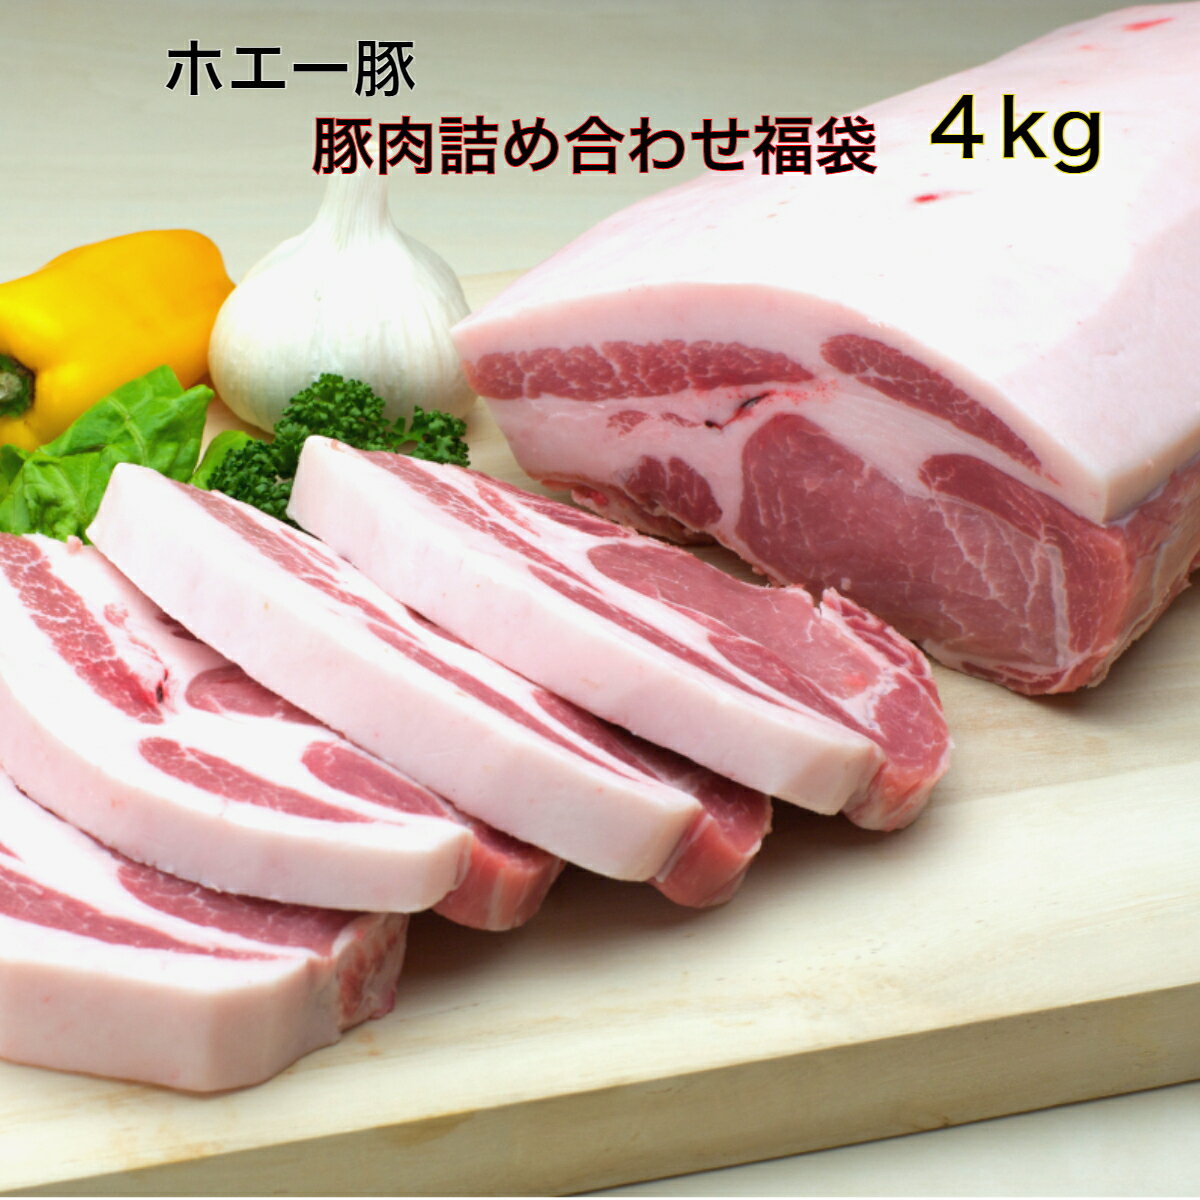 十勝 ホエー豚 豚肉 詰め合わせ セット (2kg×2セット)